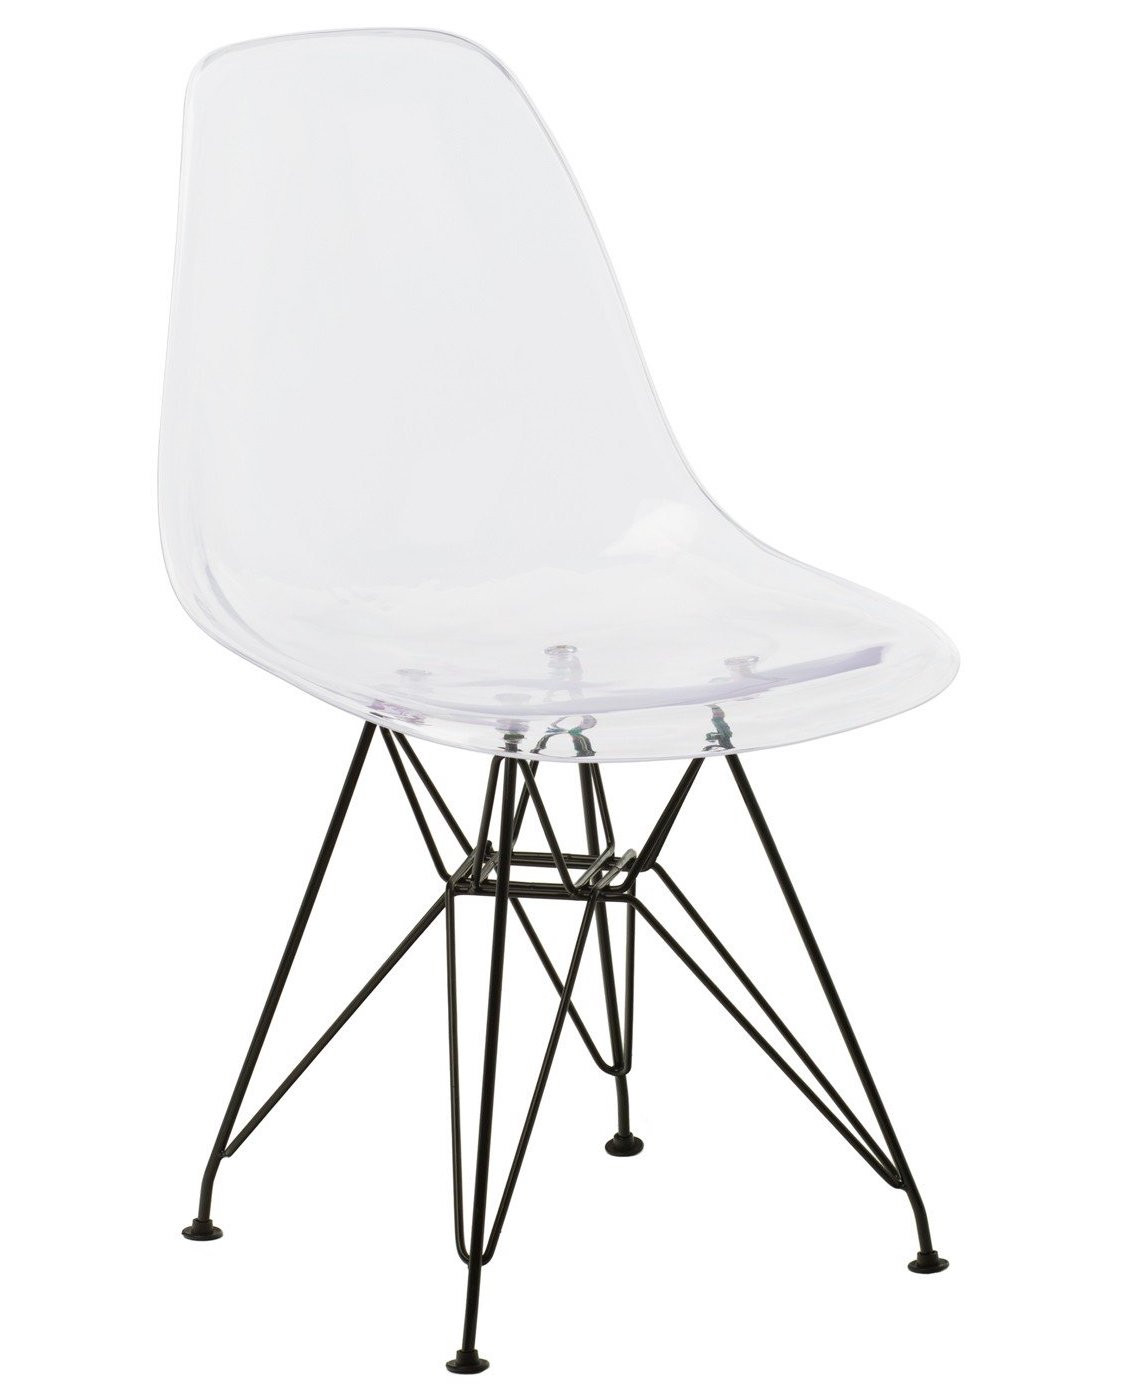 Chaise polycarbonate transparente et pieds acier noir Croizy